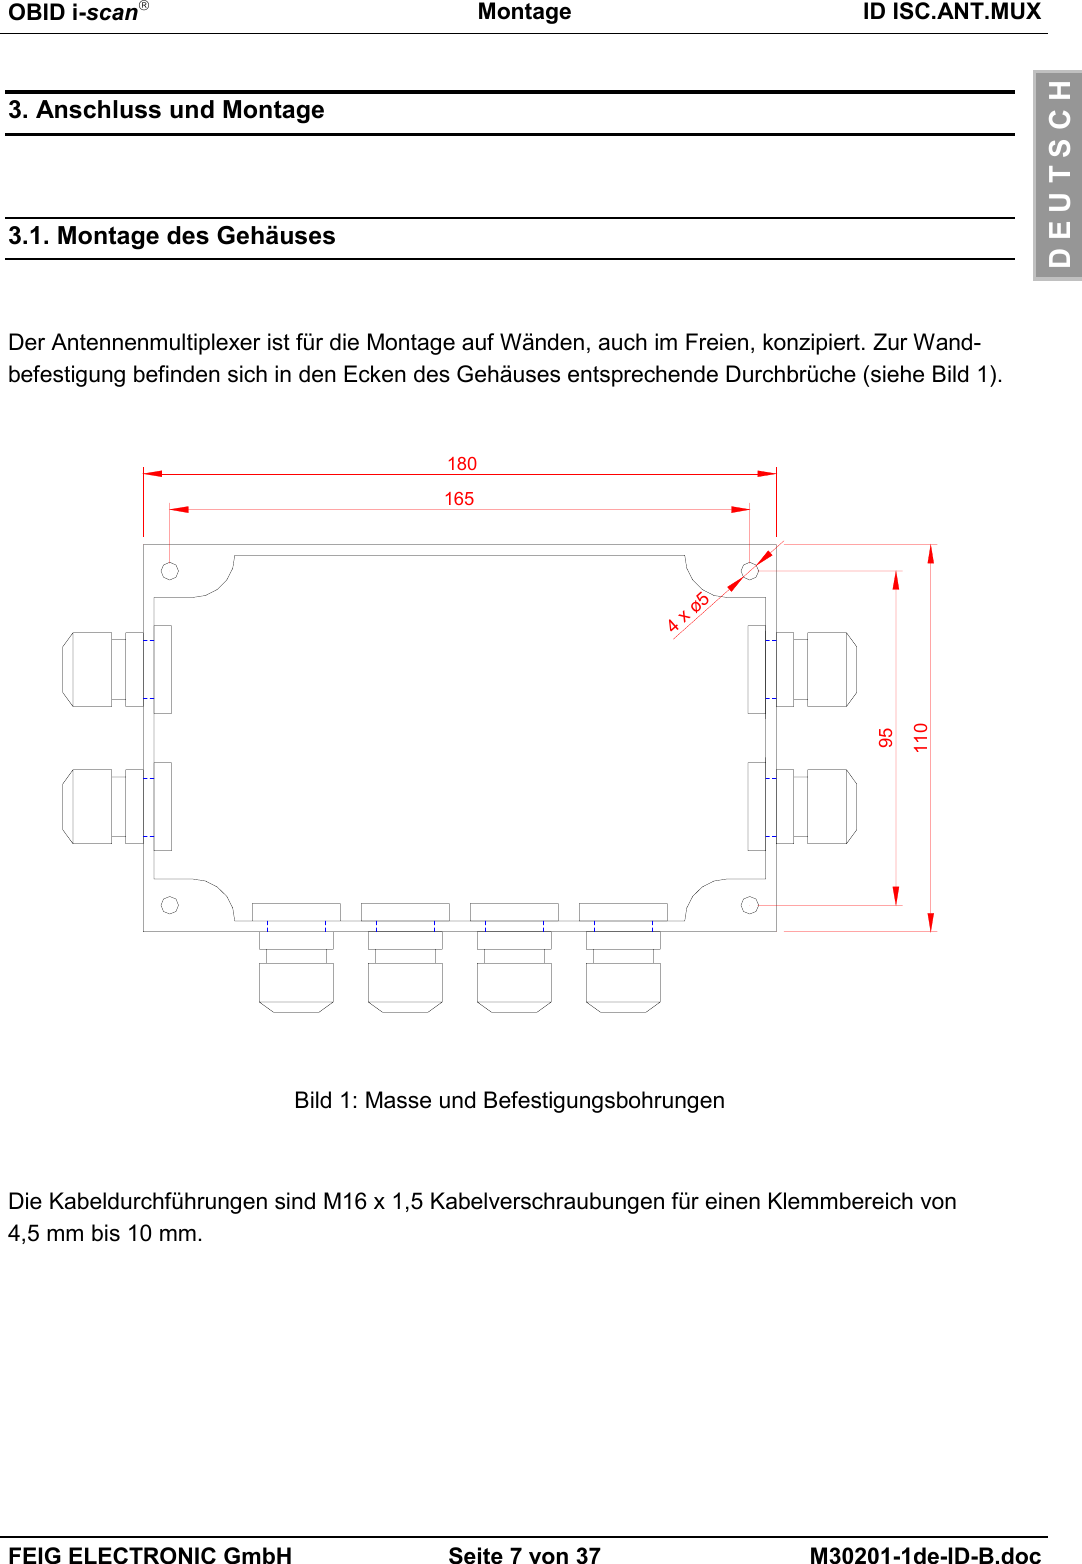 OBID i-scanMontage ID ISC.ANT.MUXFEIG ELECTRONIC GmbH Seite 7 von 37 M30201-1de-ID-B.docD E U T S C H3. Anschluss und Montage3.1. Montage des GehäusesDer Antennenmultiplexer ist für die Montage auf Wänden, auch im Freien, konzipiert. Zur Wand-befestigung befinden sich in den Ecken des Gehäuses entsprechende Durchbrüche (siehe Bild 1).Bild 1: Masse und BefestigungsbohrungenDie Kabeldurchführungen sind M16 x 1,5 Kabelverschraubungen für einen Klemmbereich von4,5 mm bis 10 mm.180165951104 x ø5